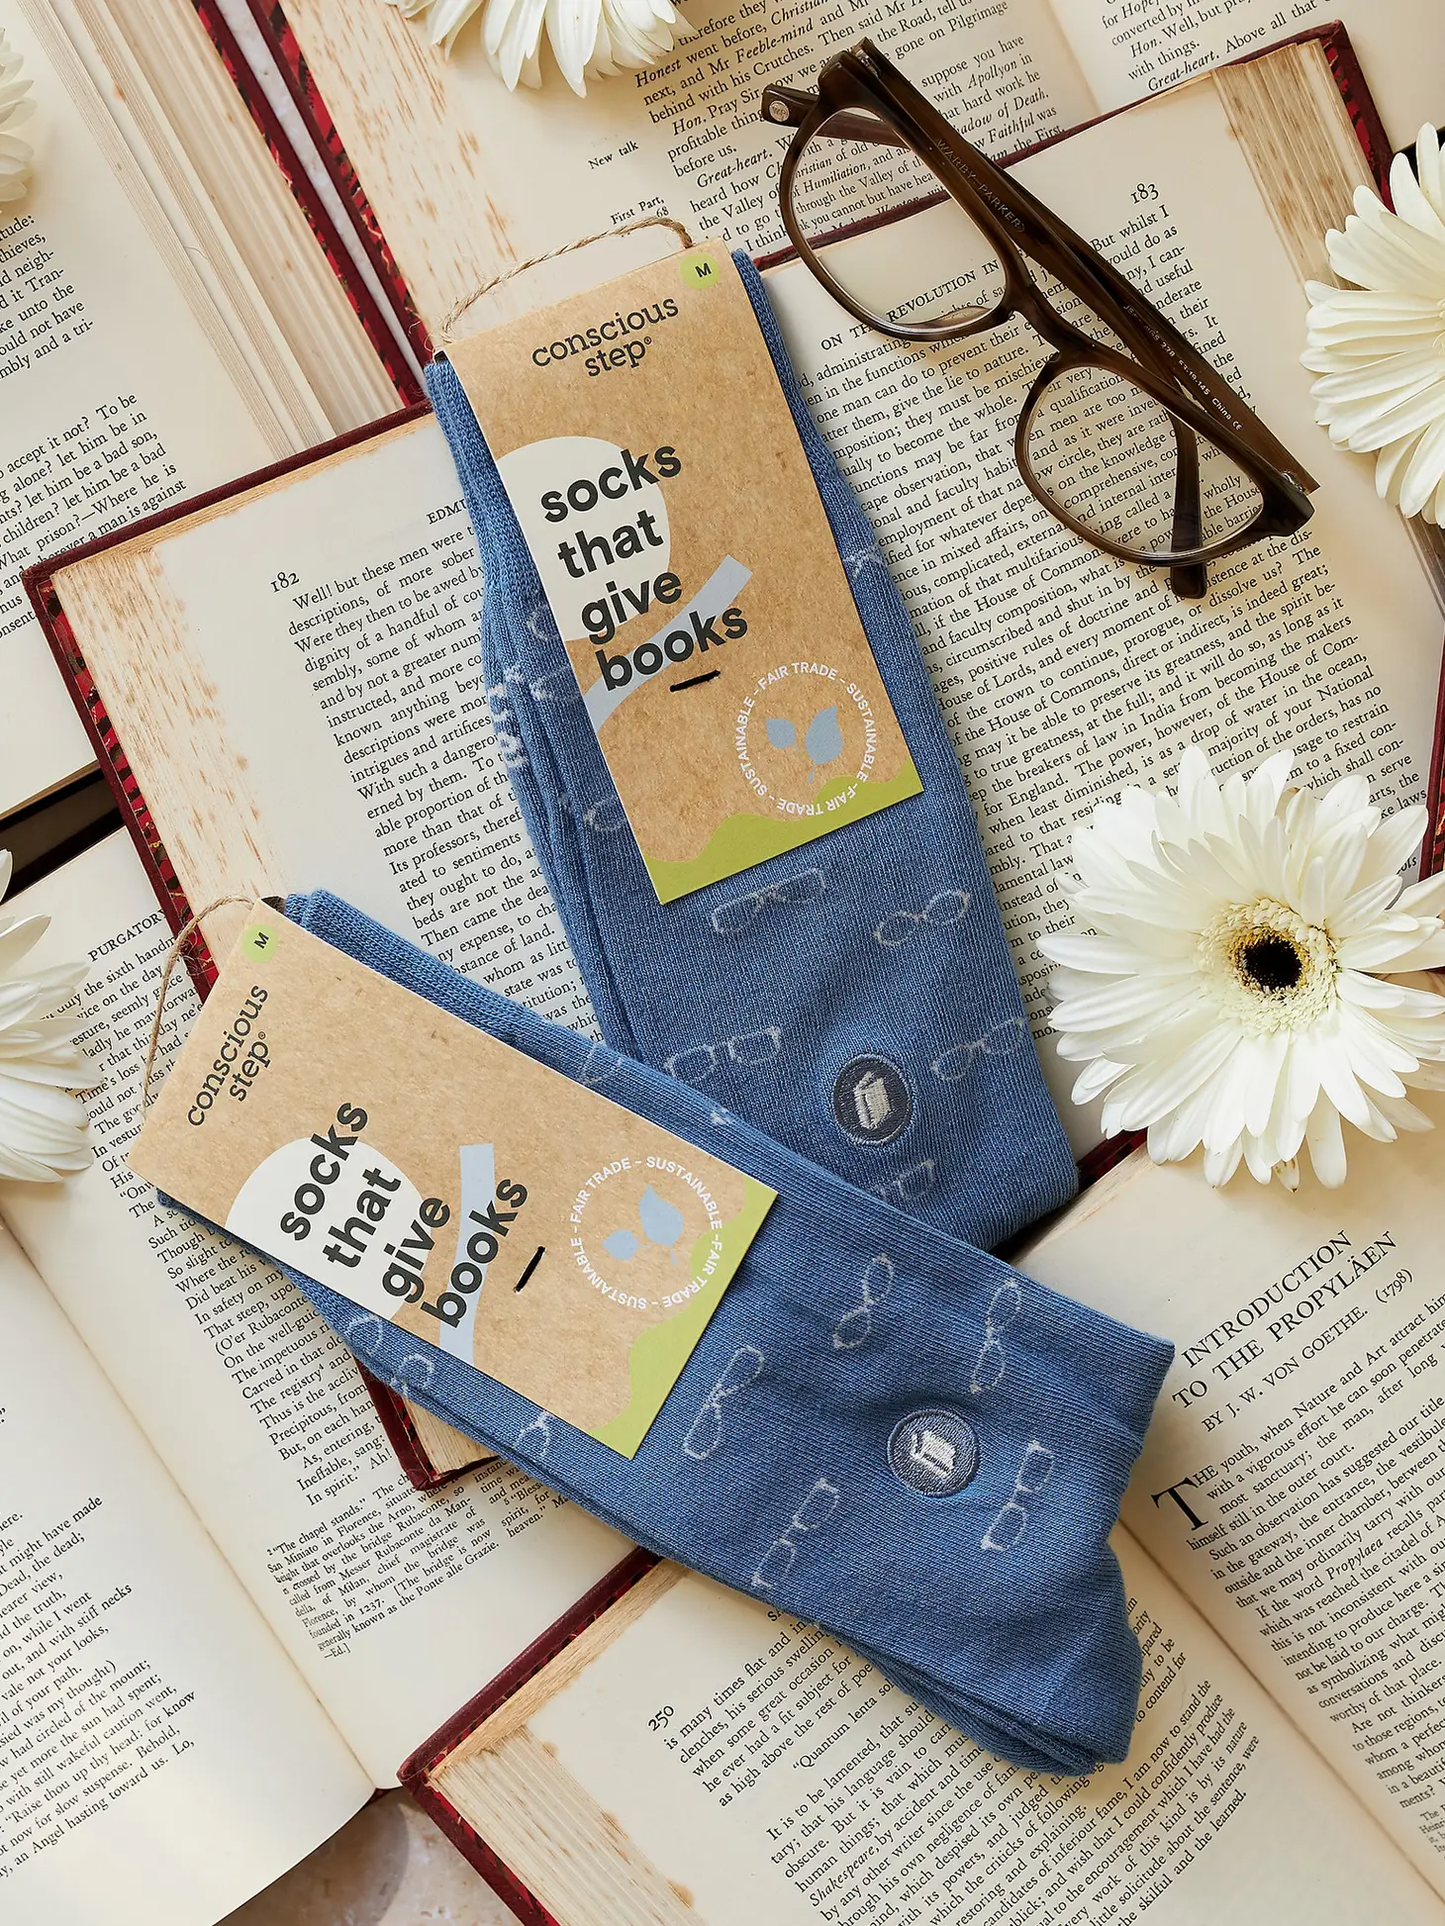 Socks That Give Books - Glasses